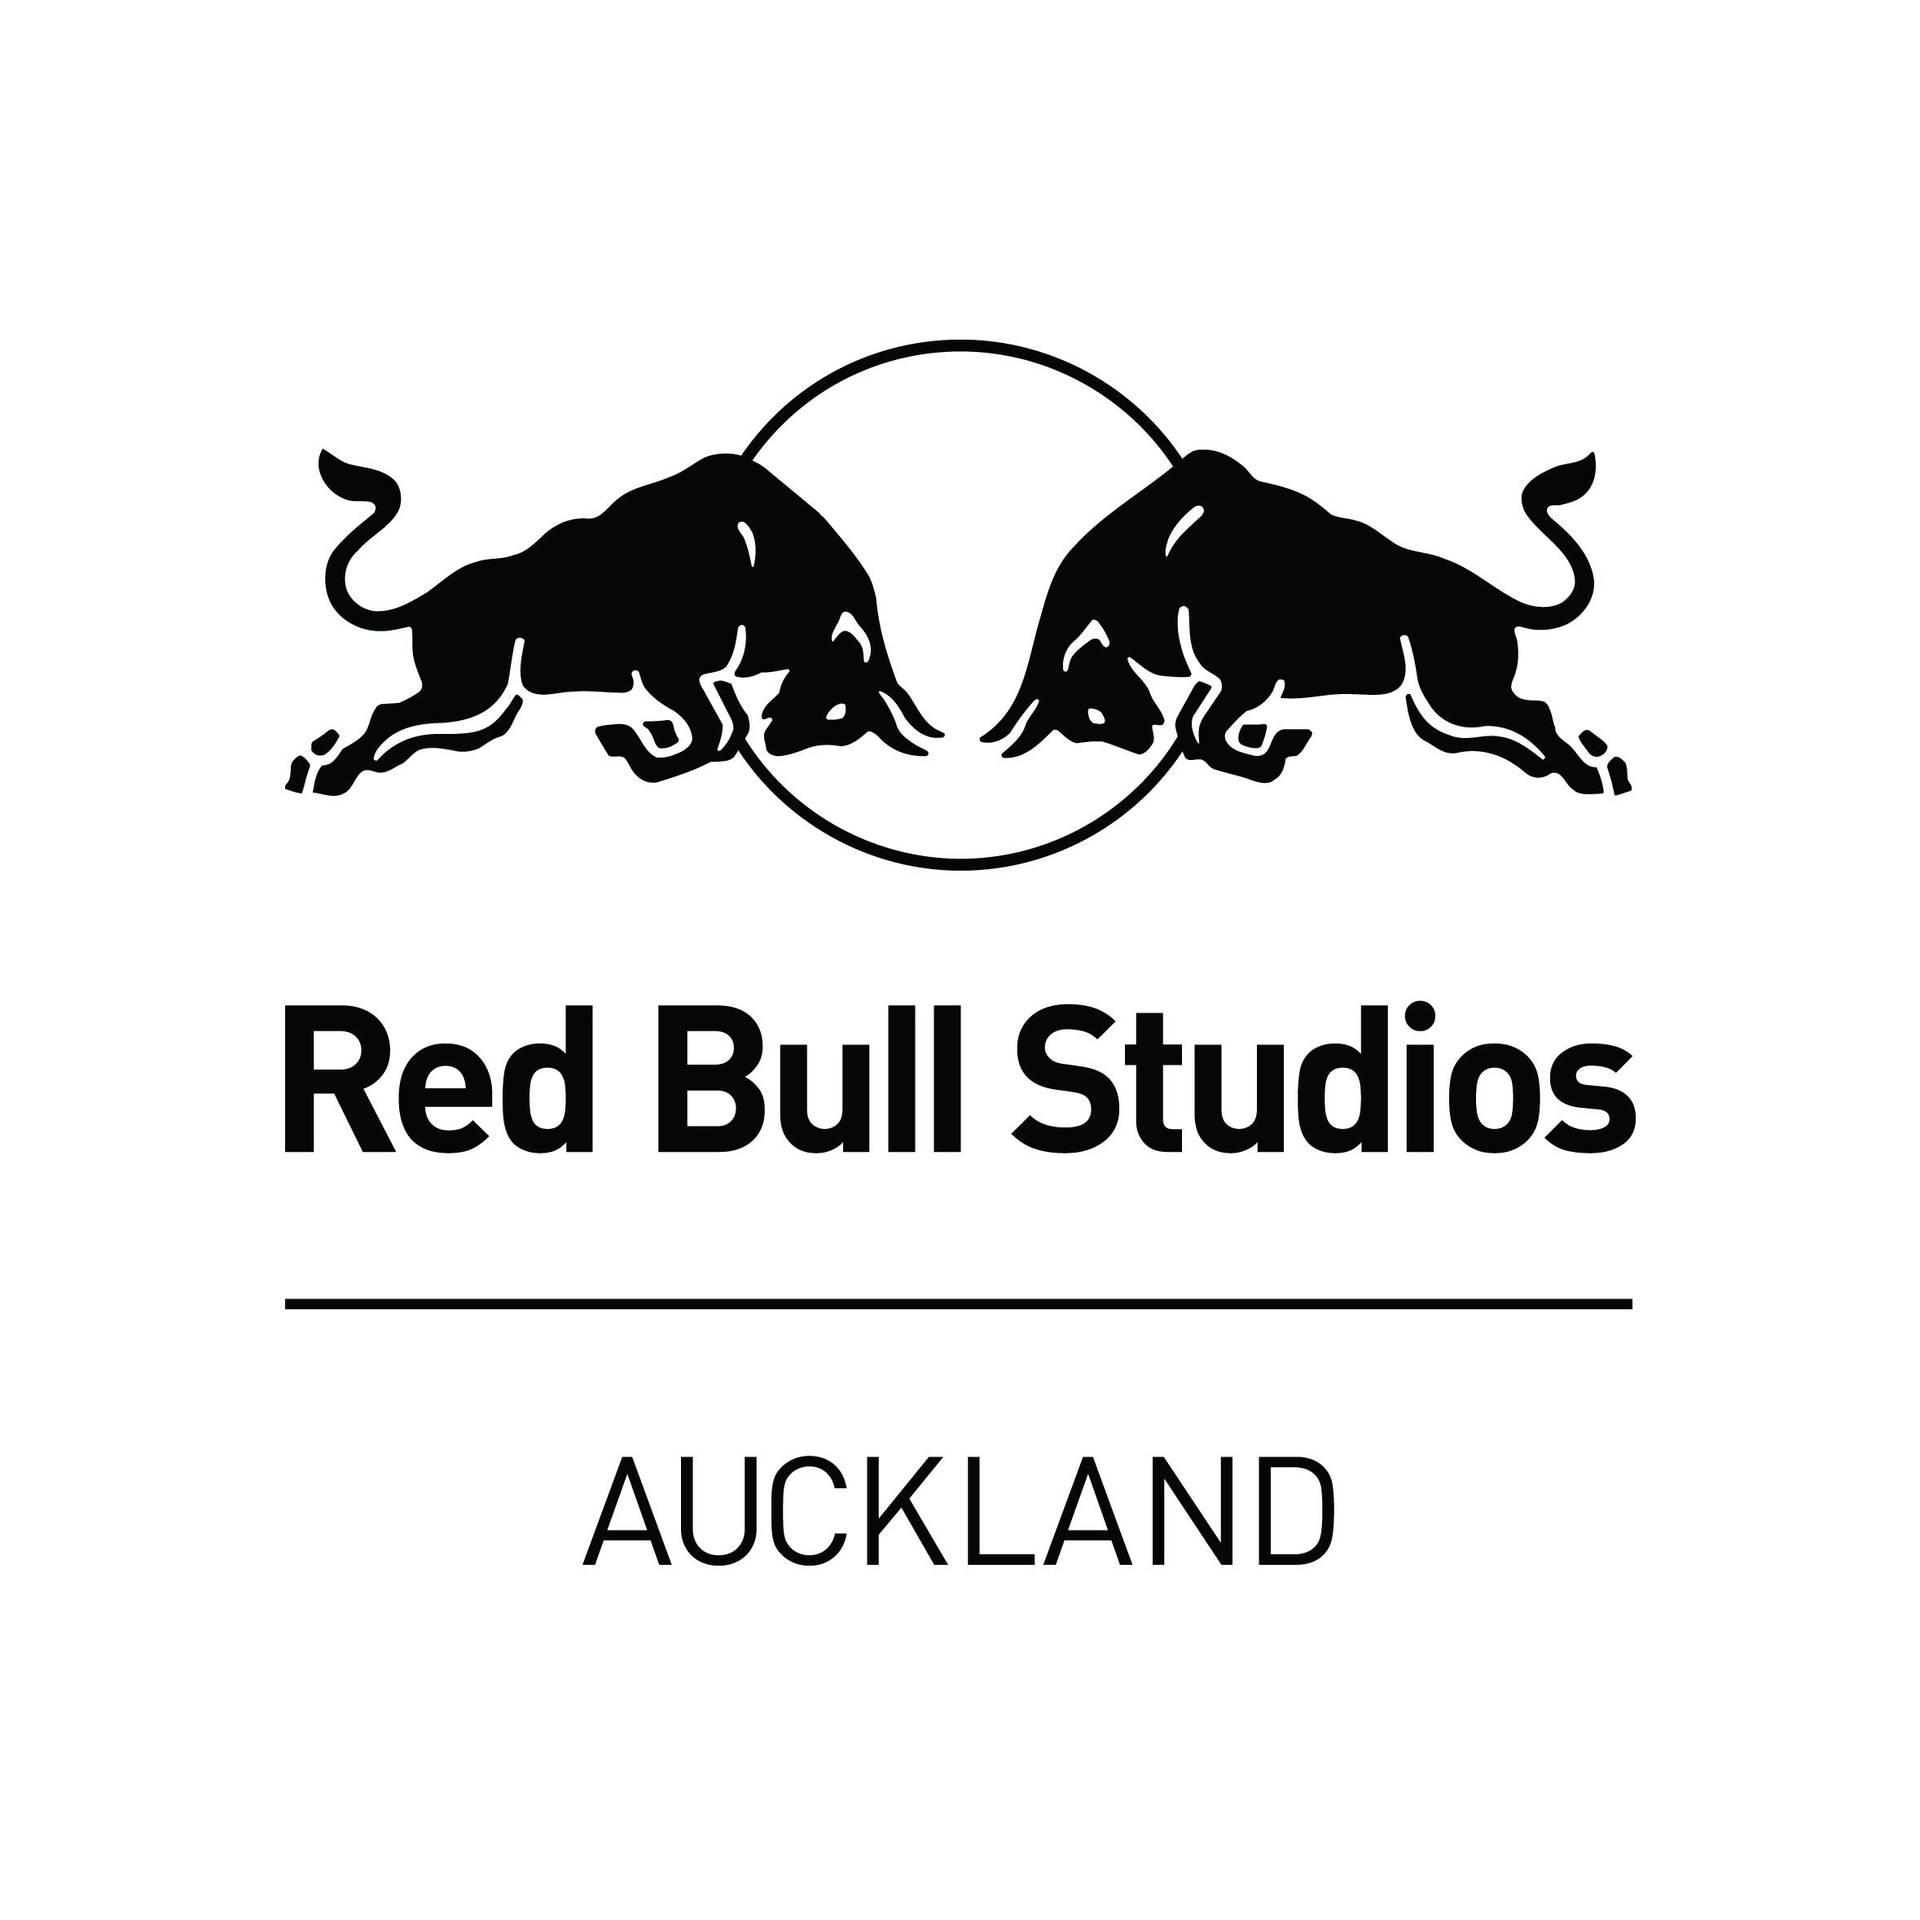 Black White and Red Bull Logo - Red Bull Studios Auckland. Red Bull Studios Auckland